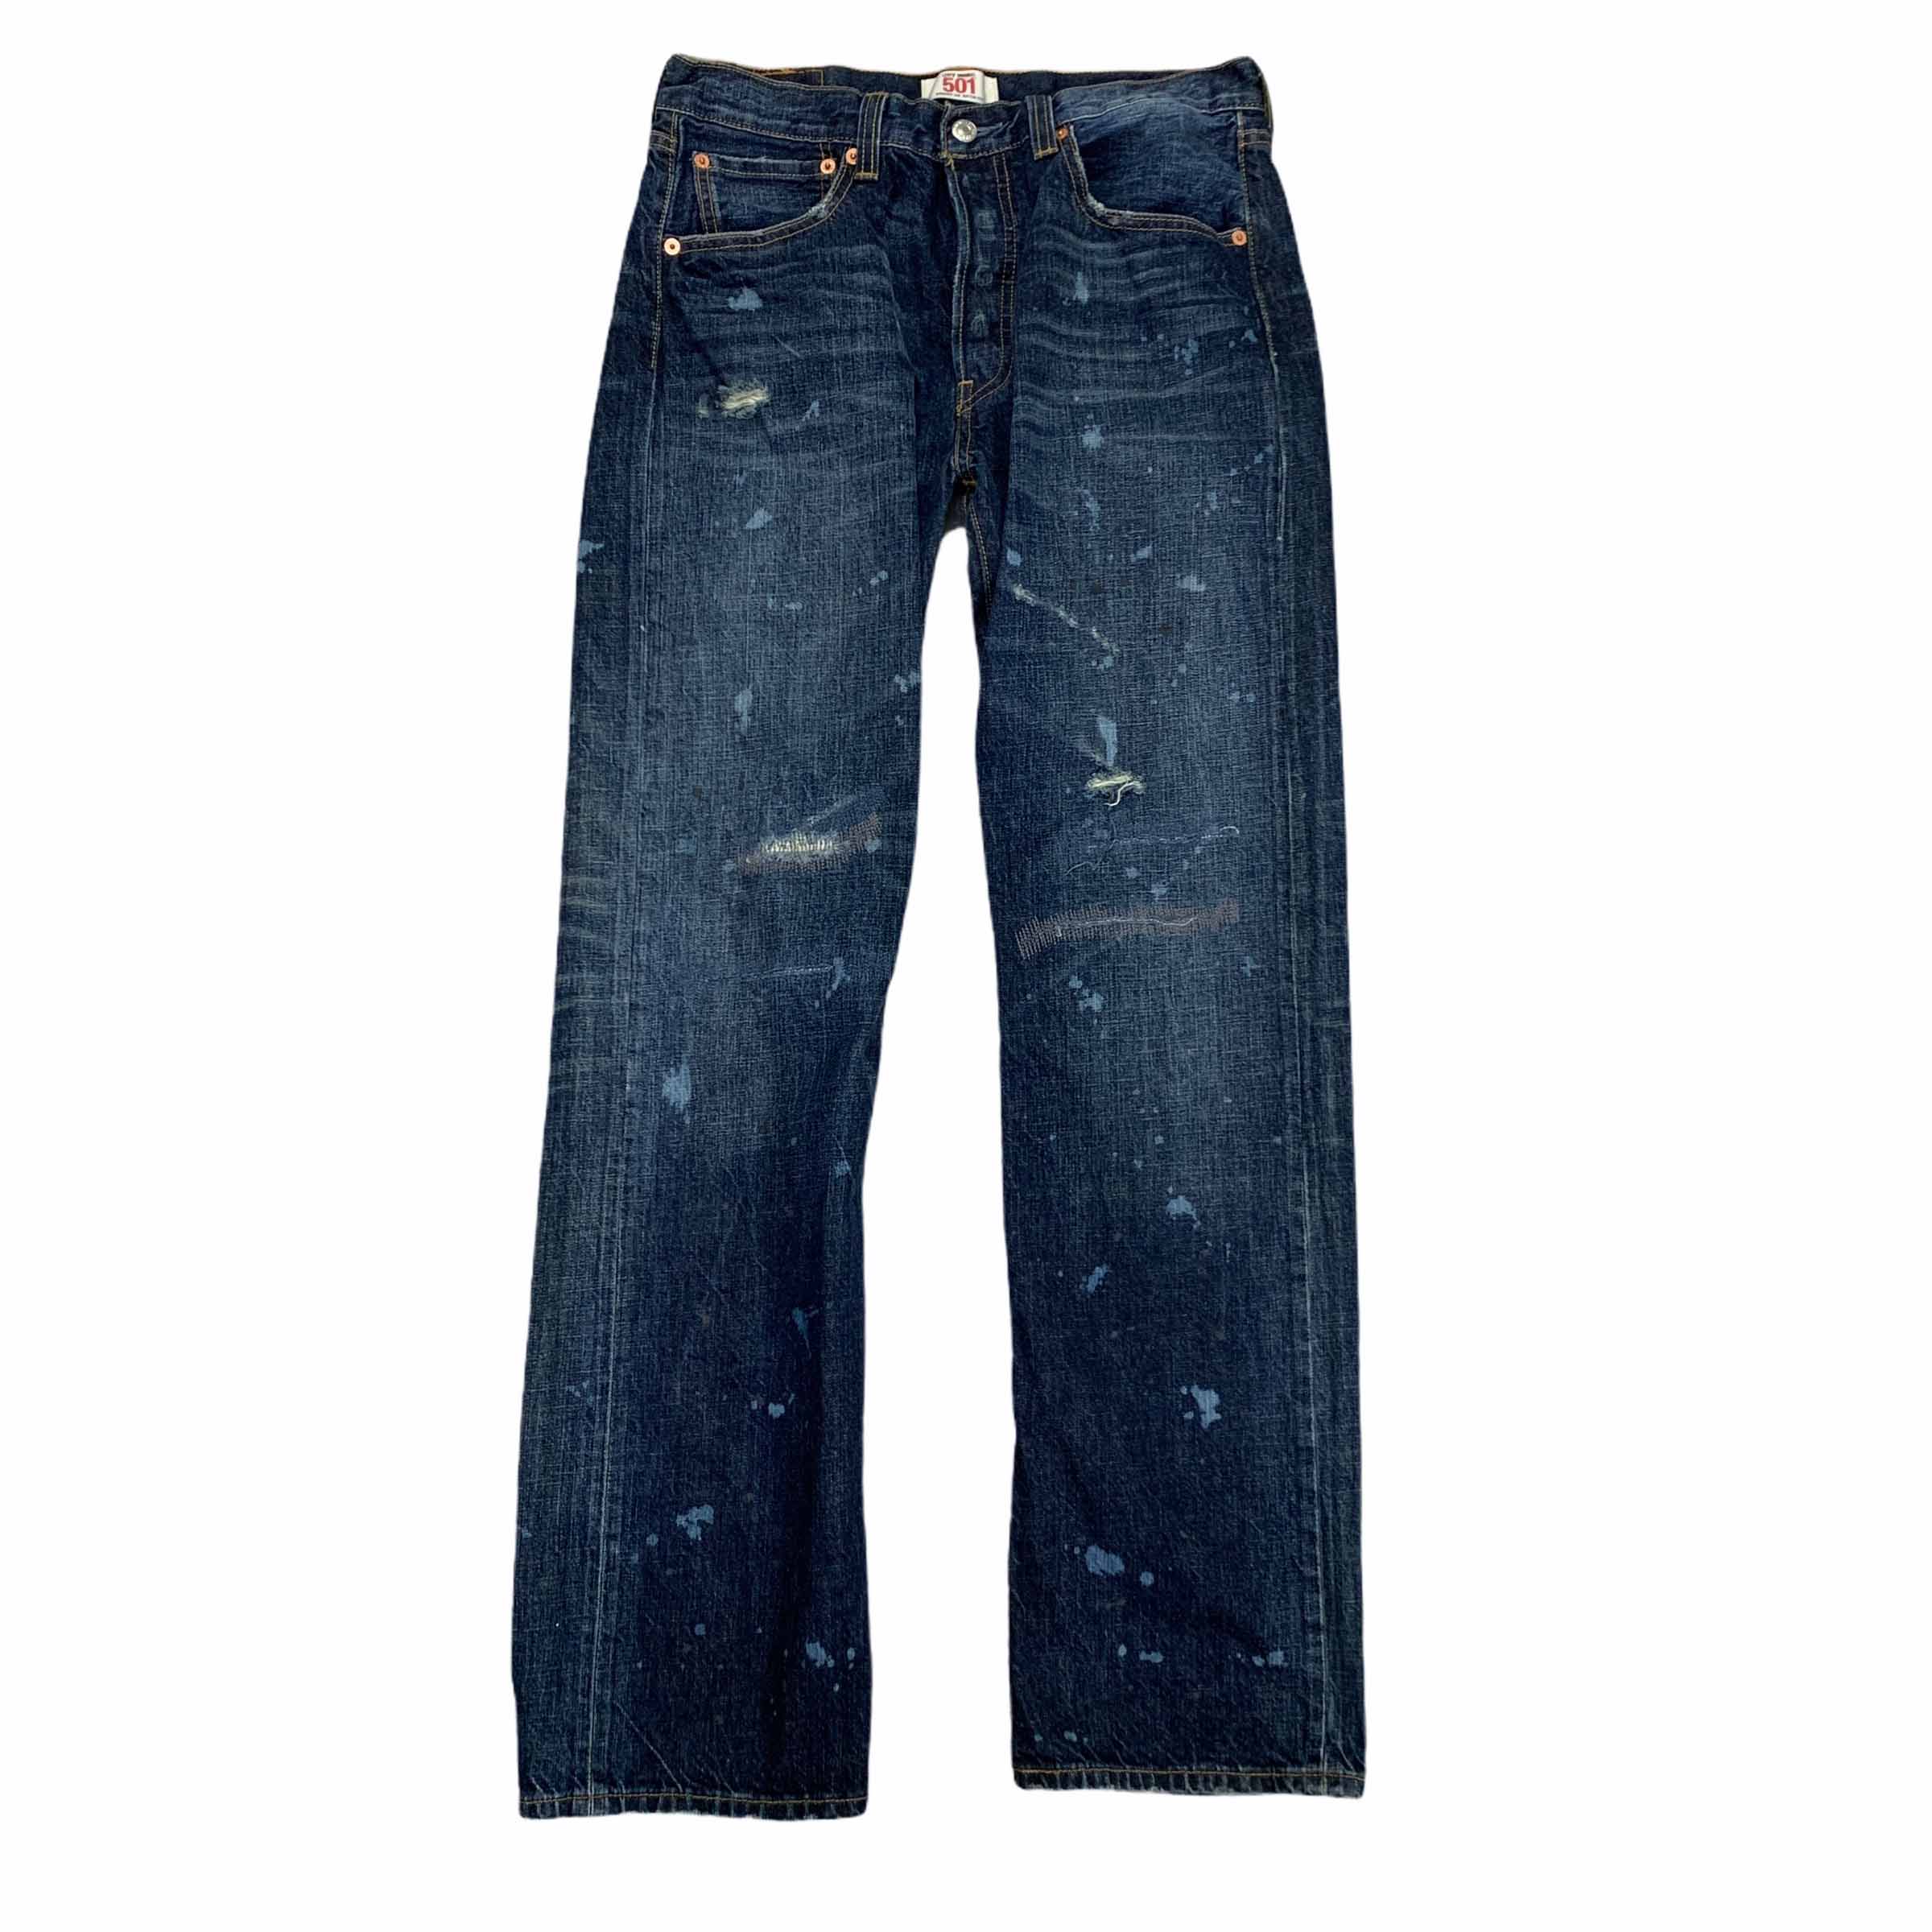 [Levis] (Vintage) 501 Vintage Painted Denim pants - Size 32/33